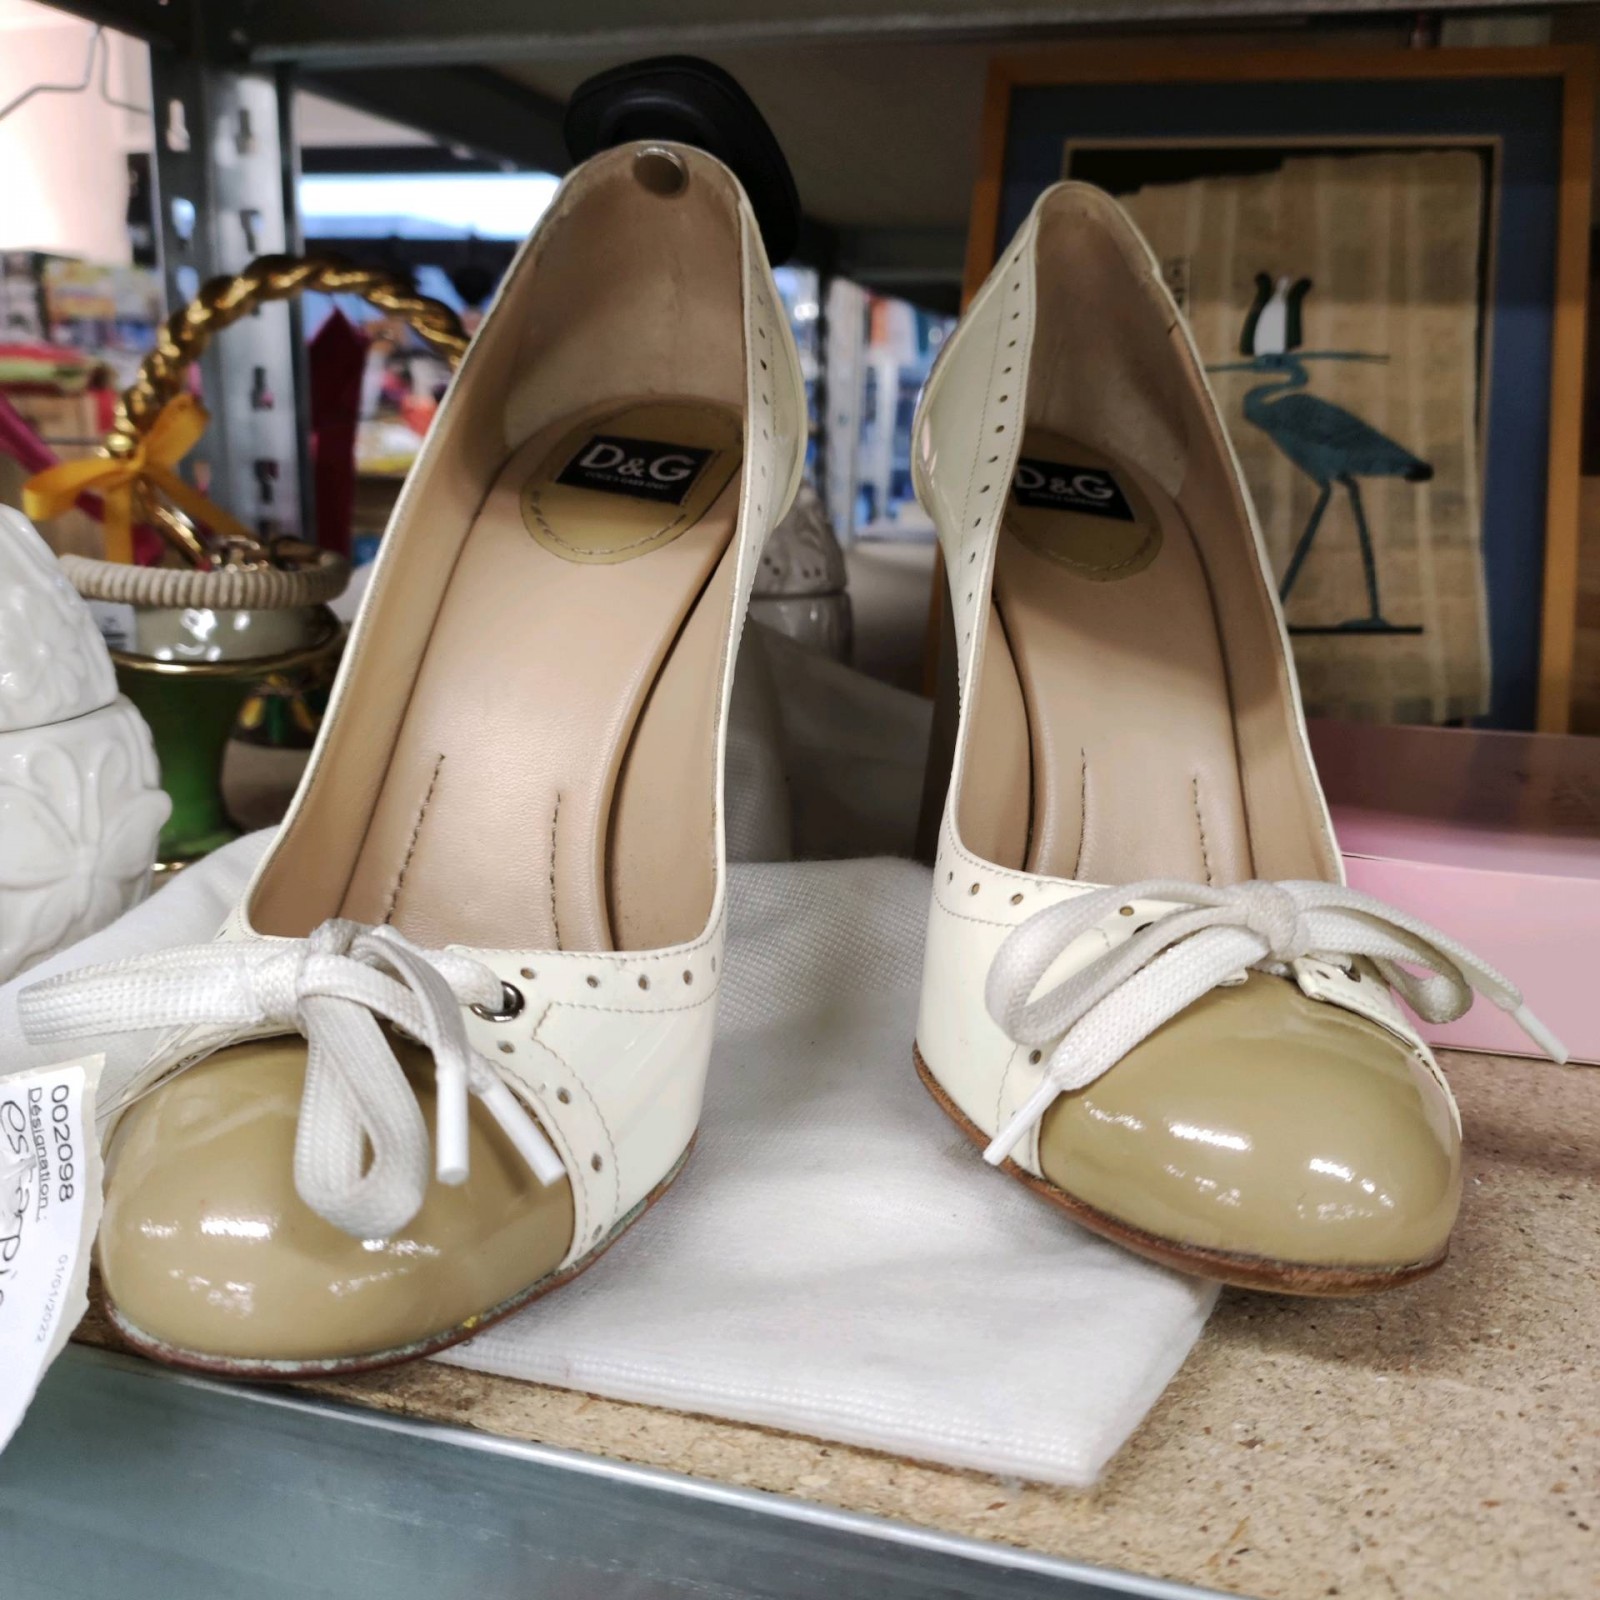 Chaussures Dolce et Gabbana à Saint-Egrève près de Grenoble